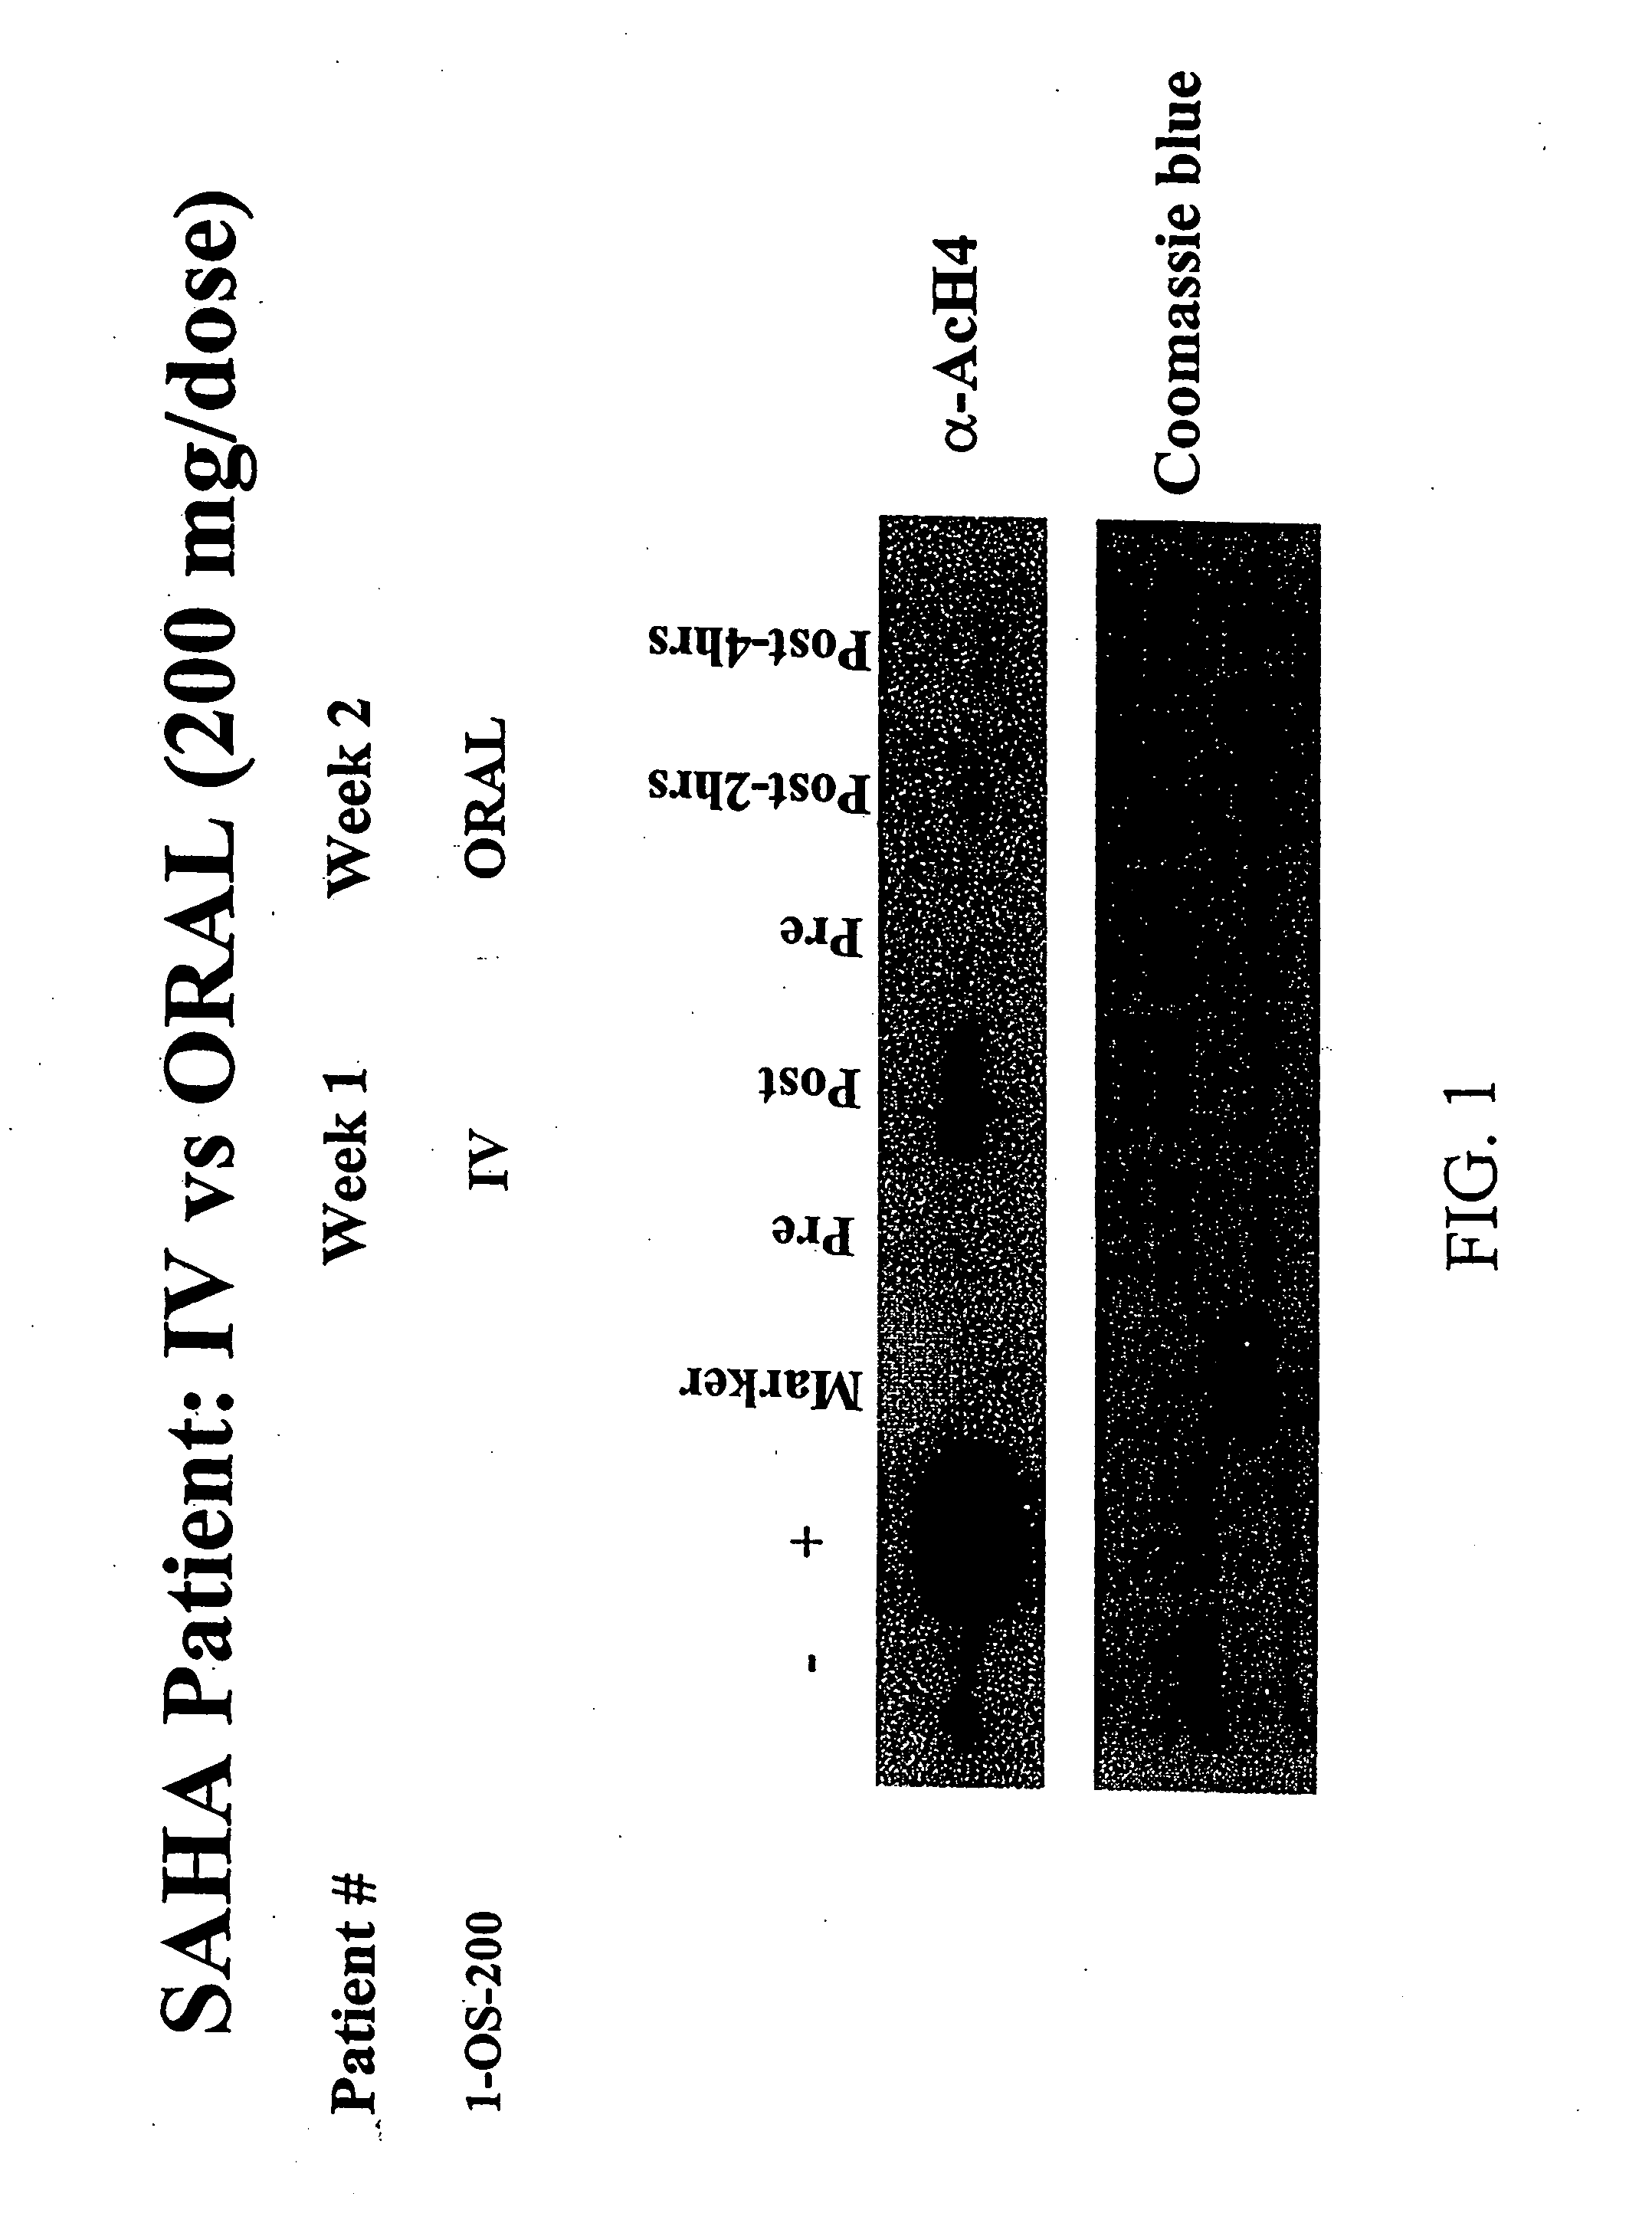 Polymorphs of suberoylanilide hydroxamic acid